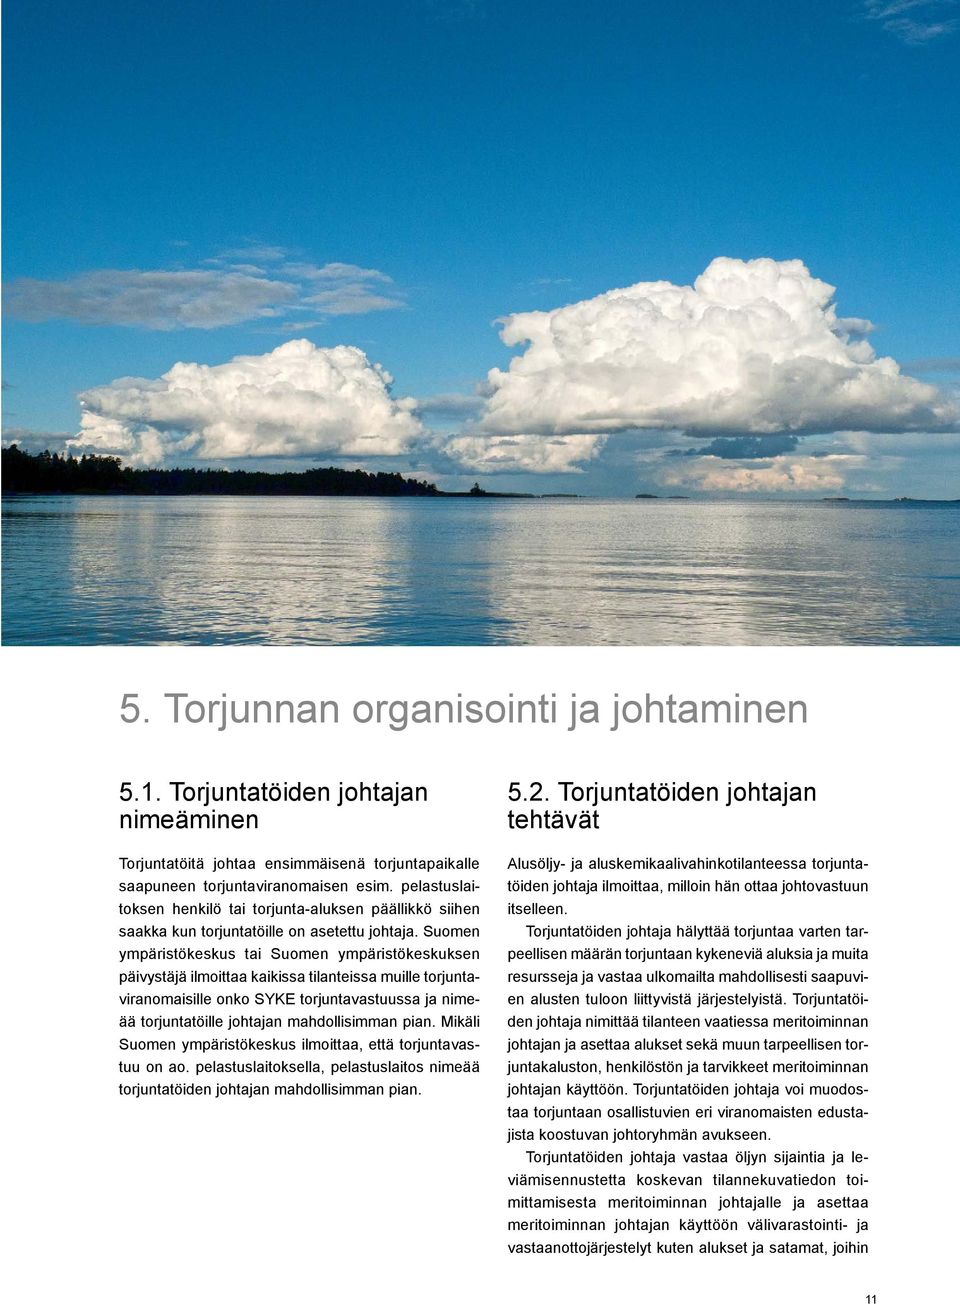 Suomen ympäristökeskus tai Suomen ympäristökeskuksen päivystäjä ilmoittaa kaikissa tilanteissa muille torjuntaviranomaisille onko SYKE torjuntavastuussa ja nimeää torjuntatöille johtajan